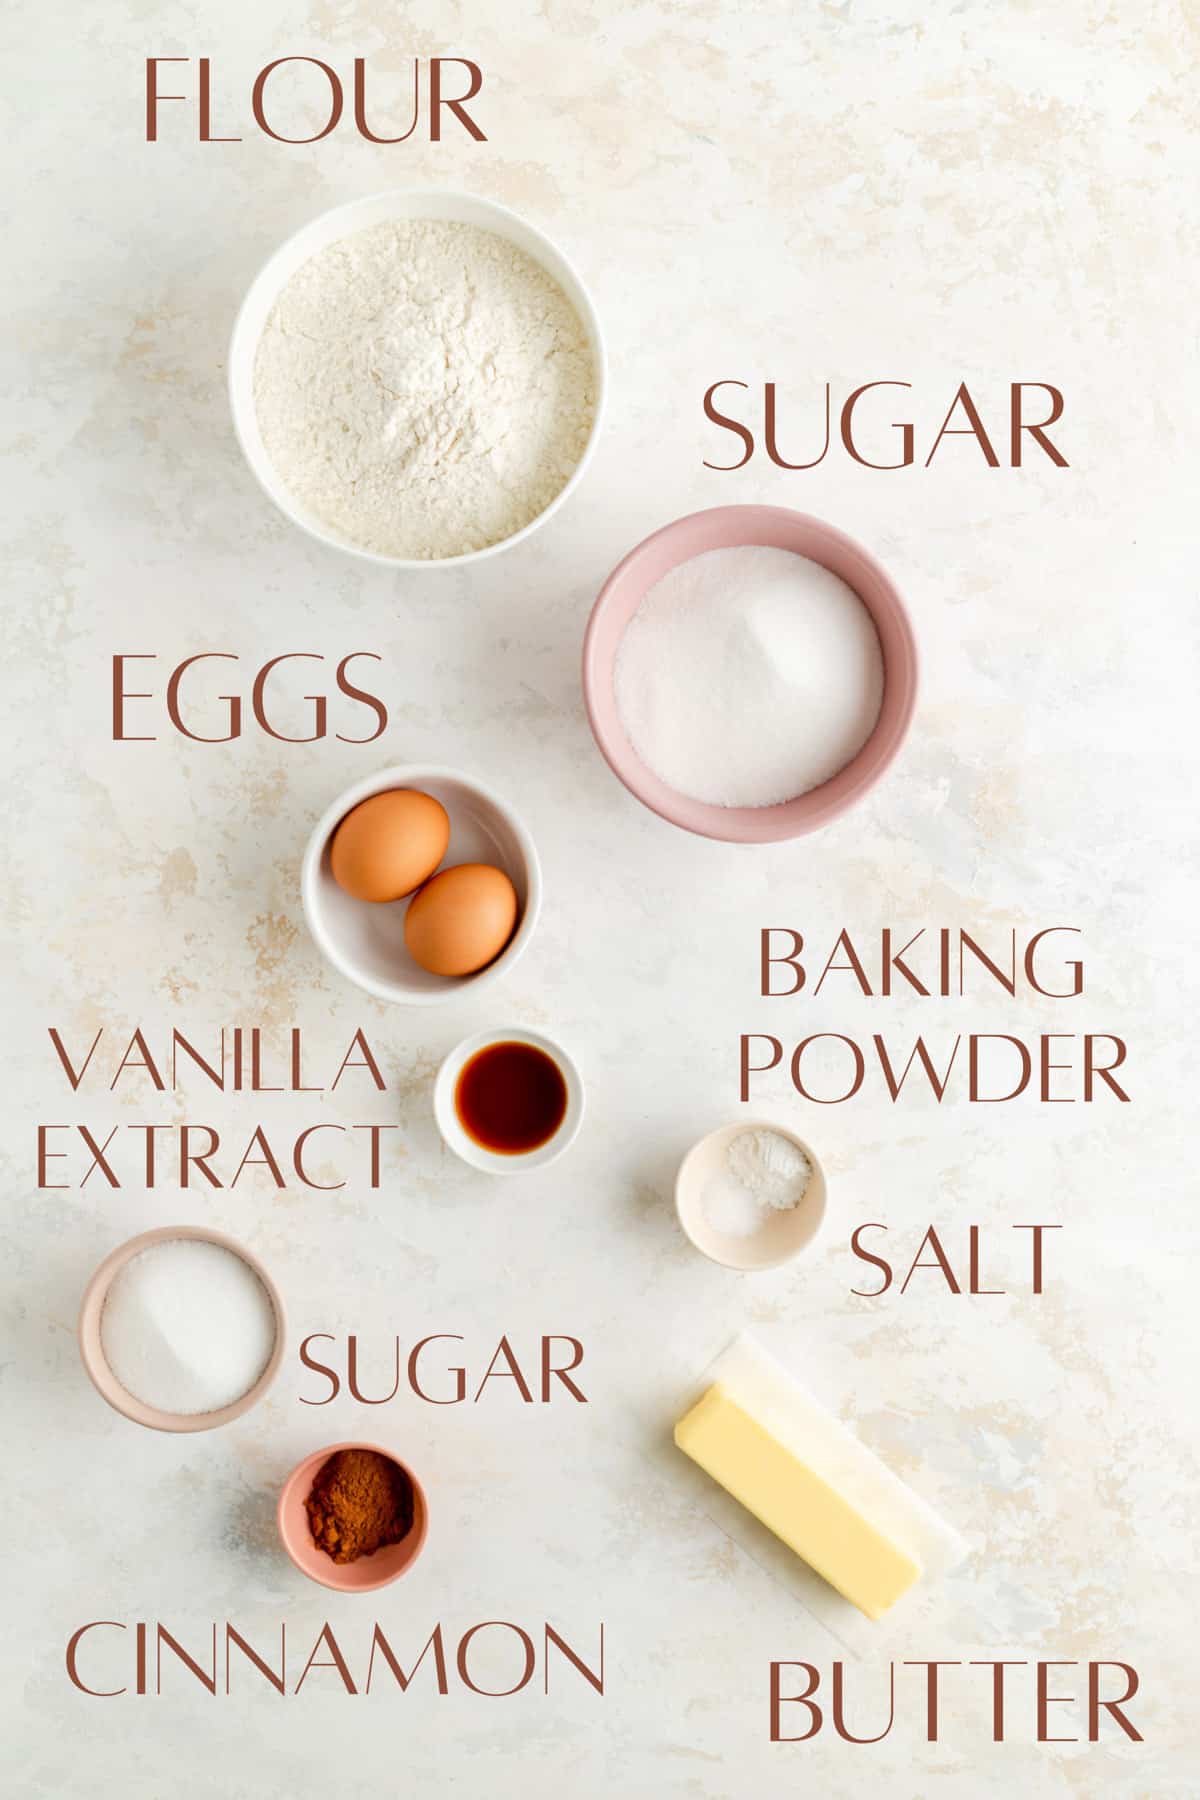 flour, sugar, eggs, baking powder, vanilla, salt, sugar, cinnamon and butter in individual bowls.